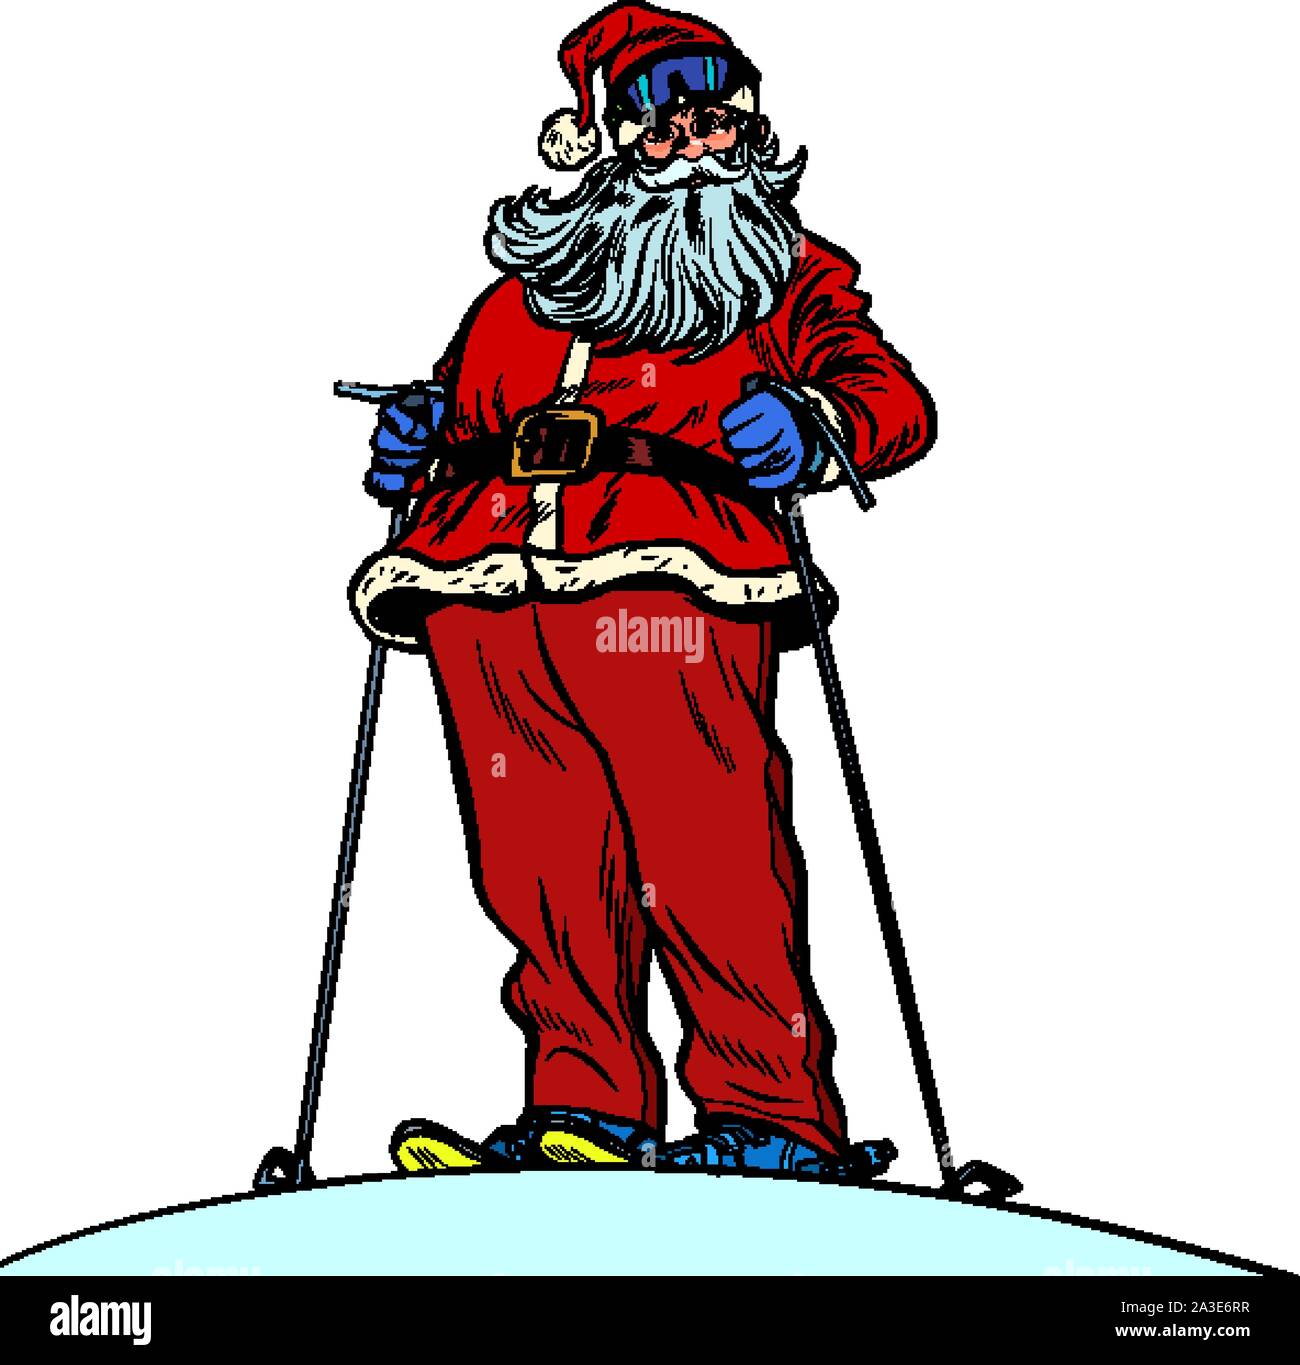 Caractère du Père Noël sur la montagne de neige joyeux Noël et bonne année. Pop art retro vintage illustration vectorielle dessin kitsch 50s 60s Illustration de Vecteur